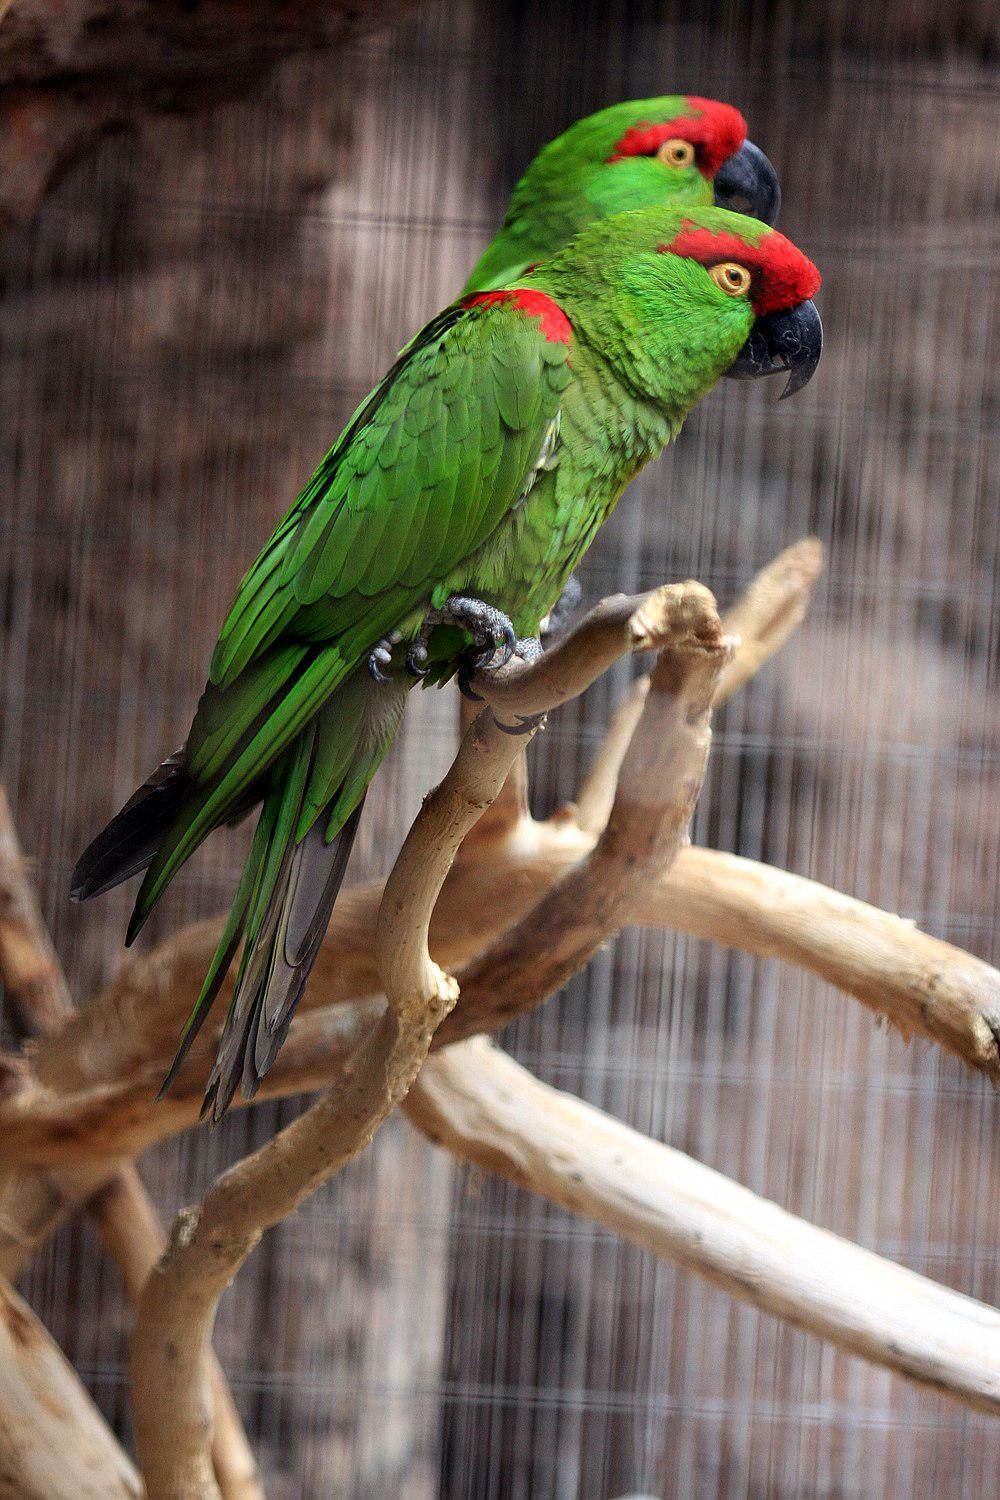 厚嘴鹦哥 / Thick-billed Parrot / Rhynchopsitta pachyrhyncha